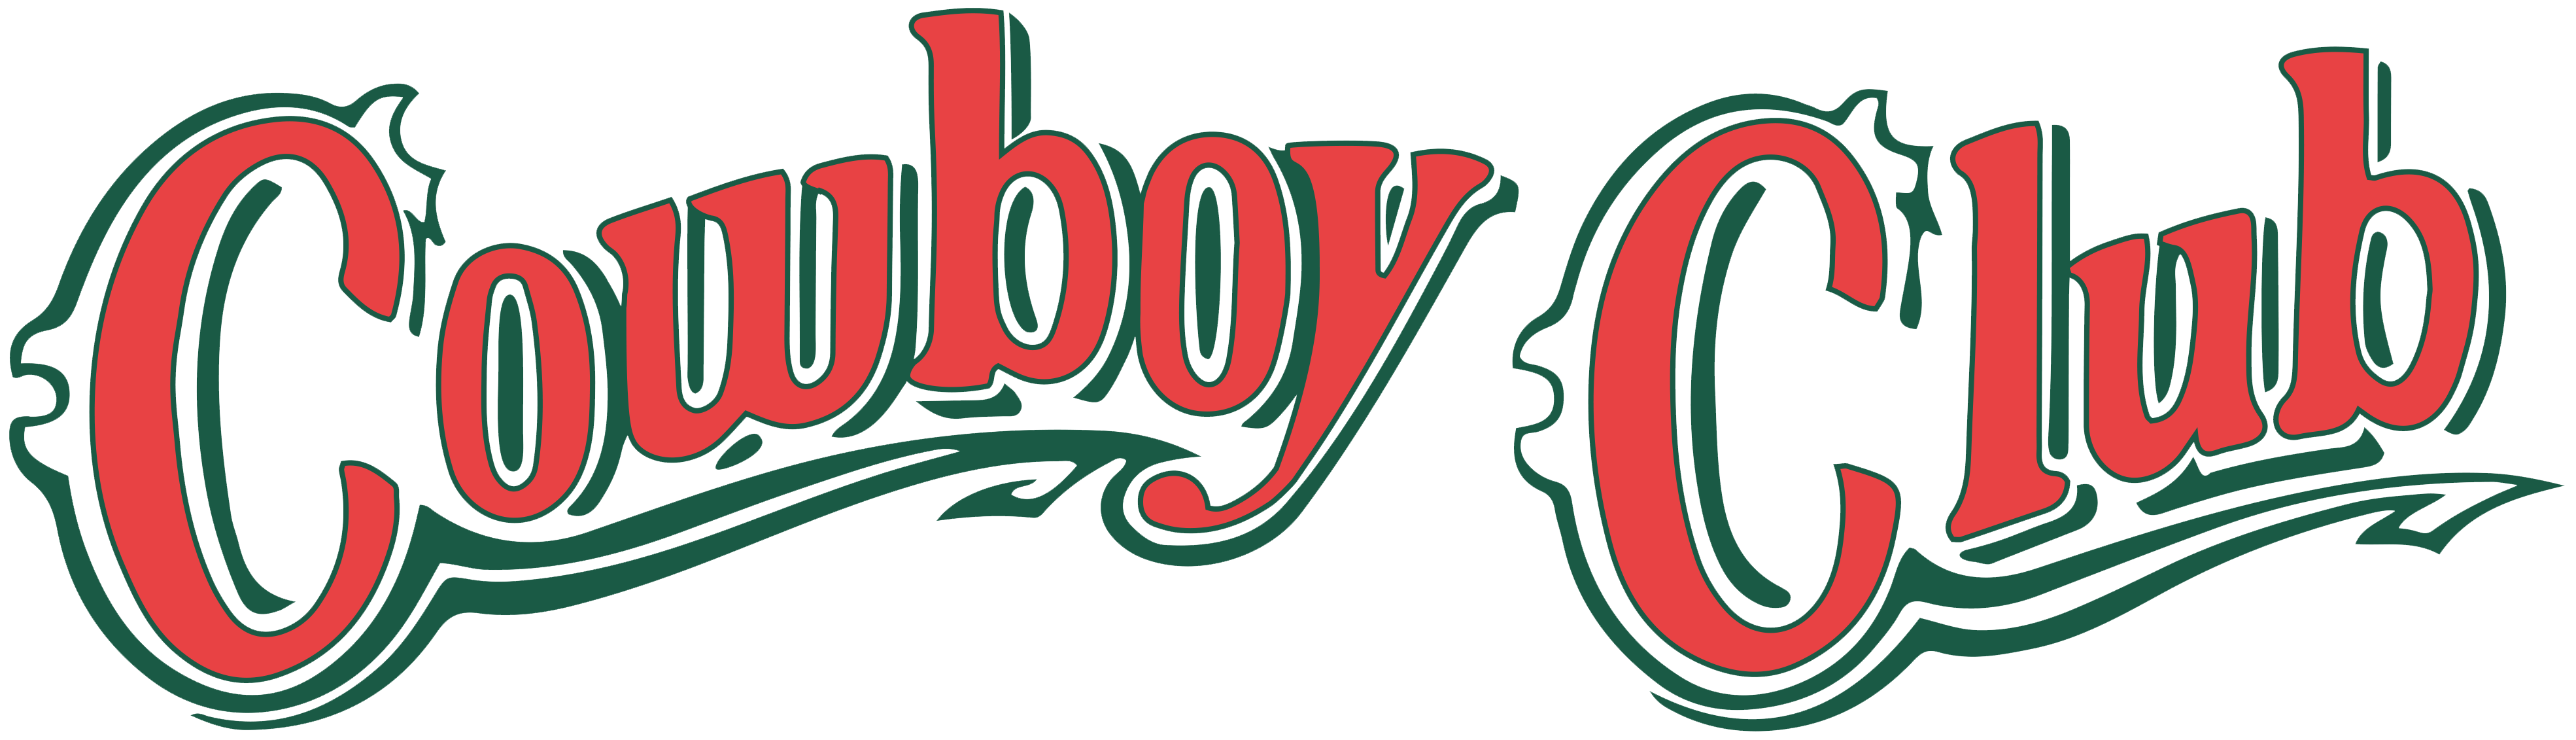 Cowboy Logo Free PNG Image